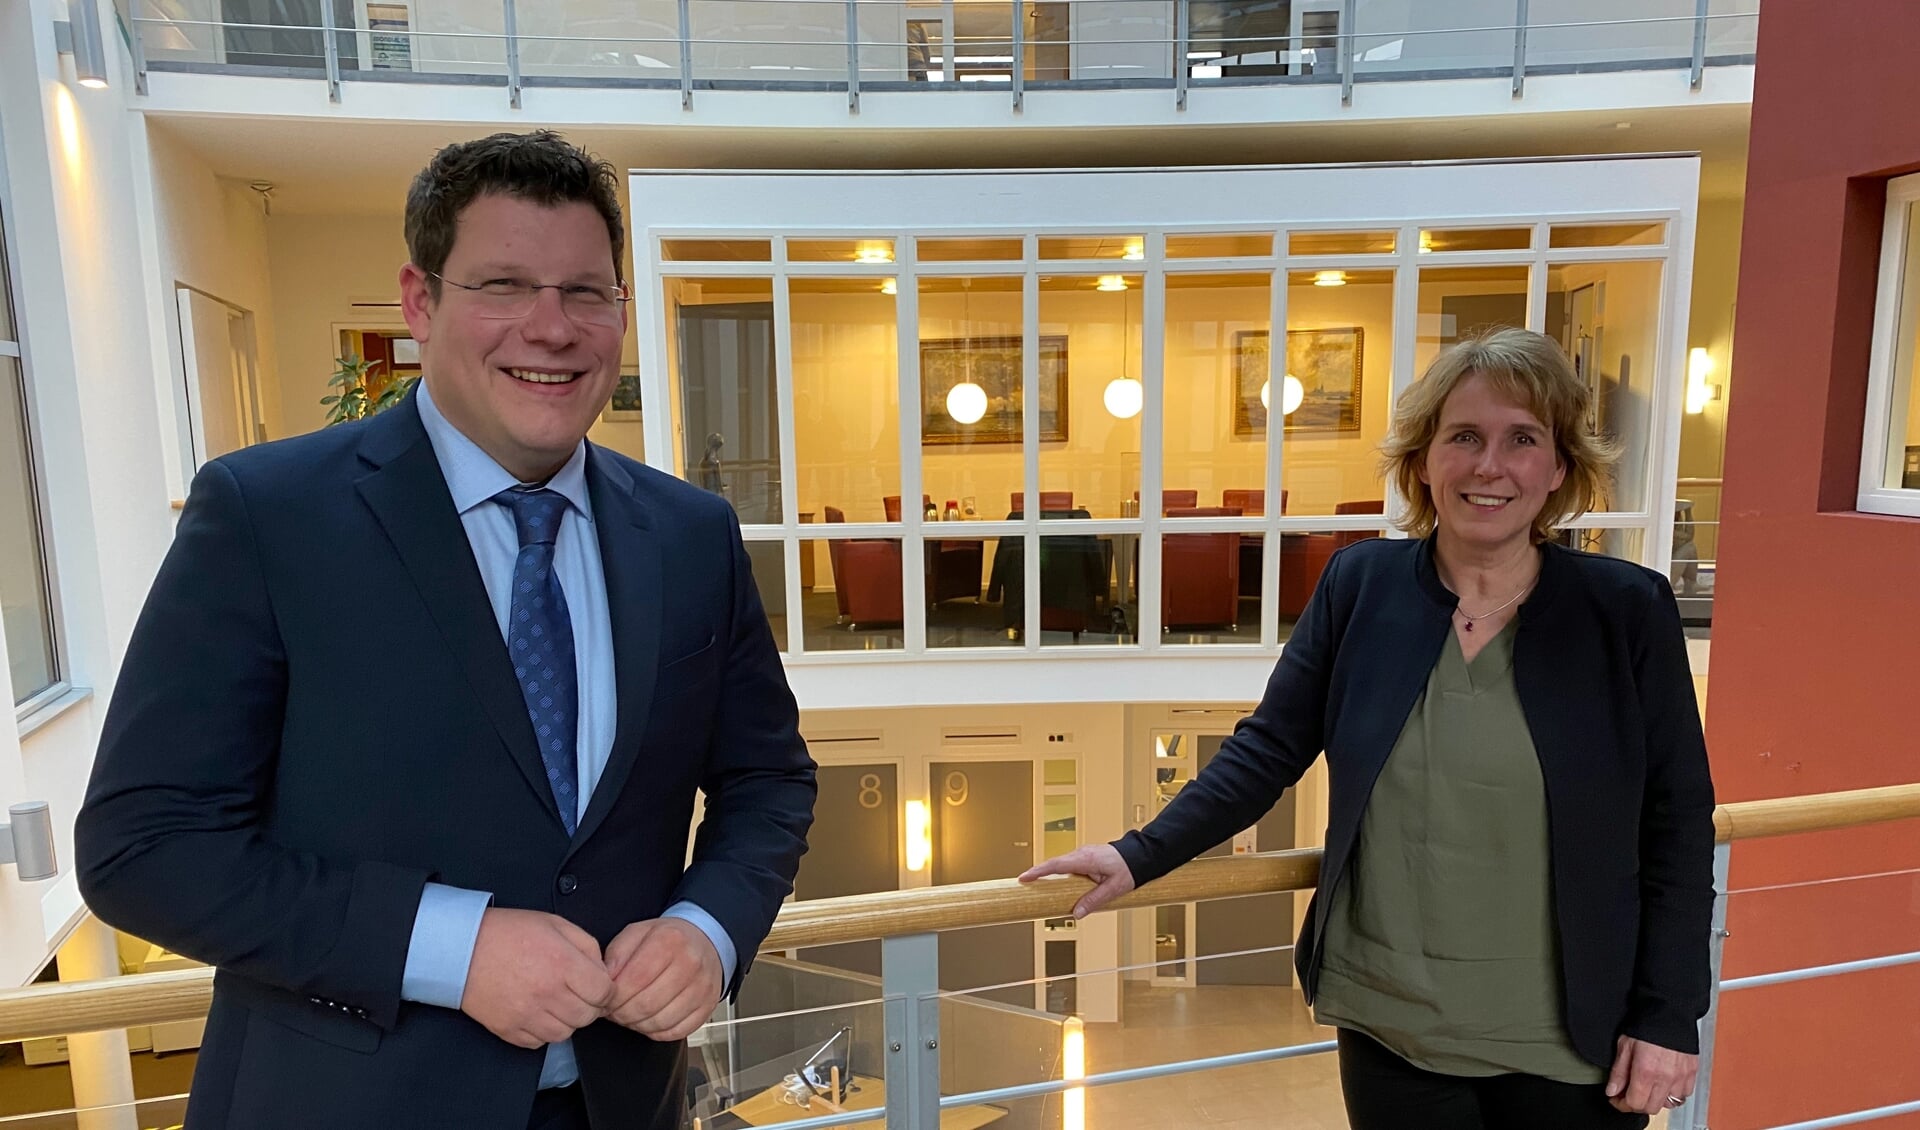 De nieuwe politieke gezichten in het Land van Cuijkse college van B en W: CDA'er Mark Janssen-van Gaal en Antoinette Maas van GroenLinks/PvdA.